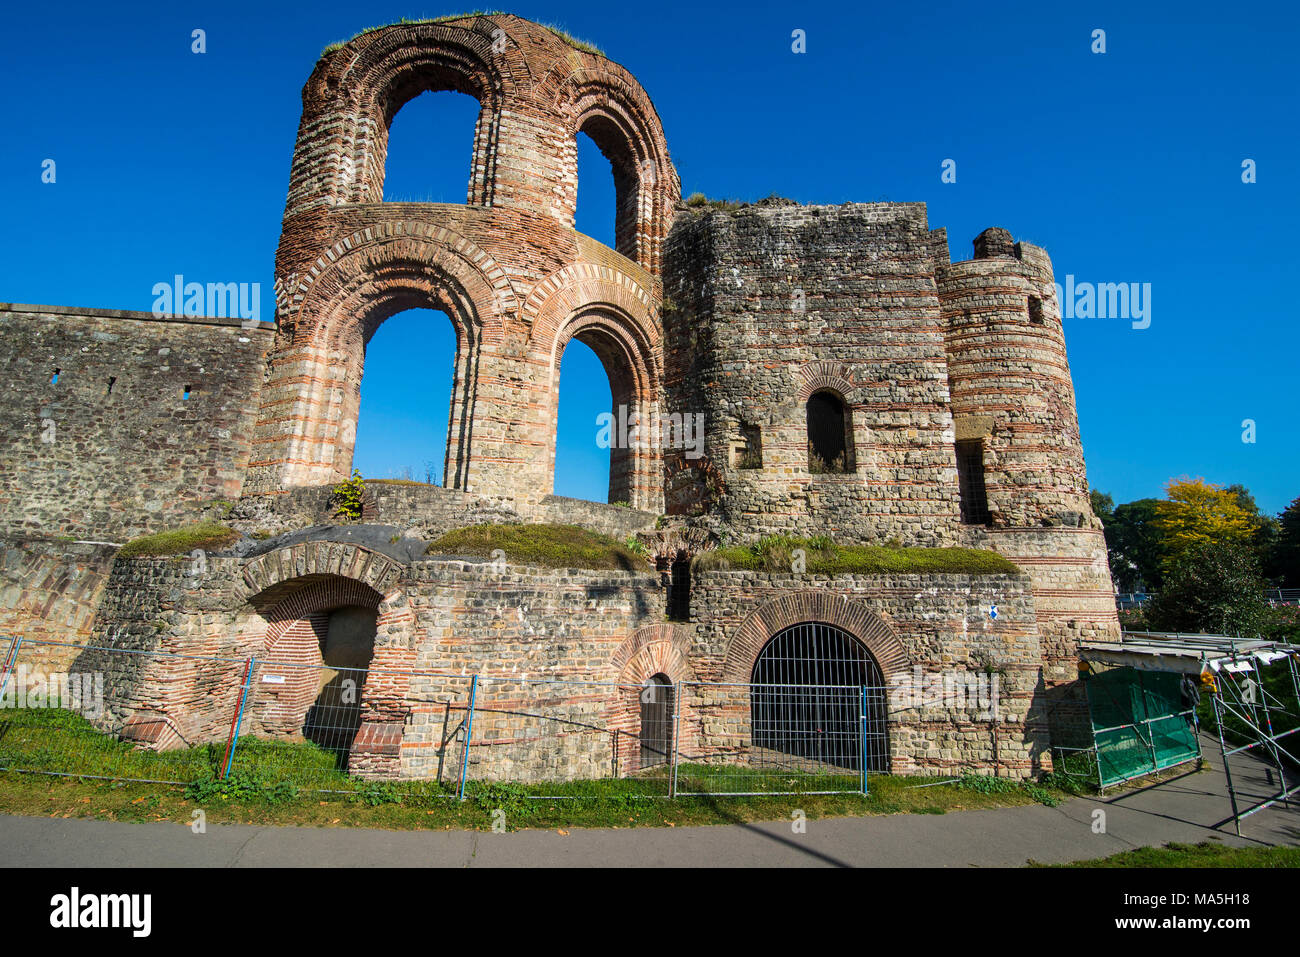 Ruines baignoire impériale romaine de Trèves, patrimoine mondial de l'UNESCO, la vue de la vallée de la Moselle, Trèves, Rhénanie-Palatinat, Allemagne Banque D'Images